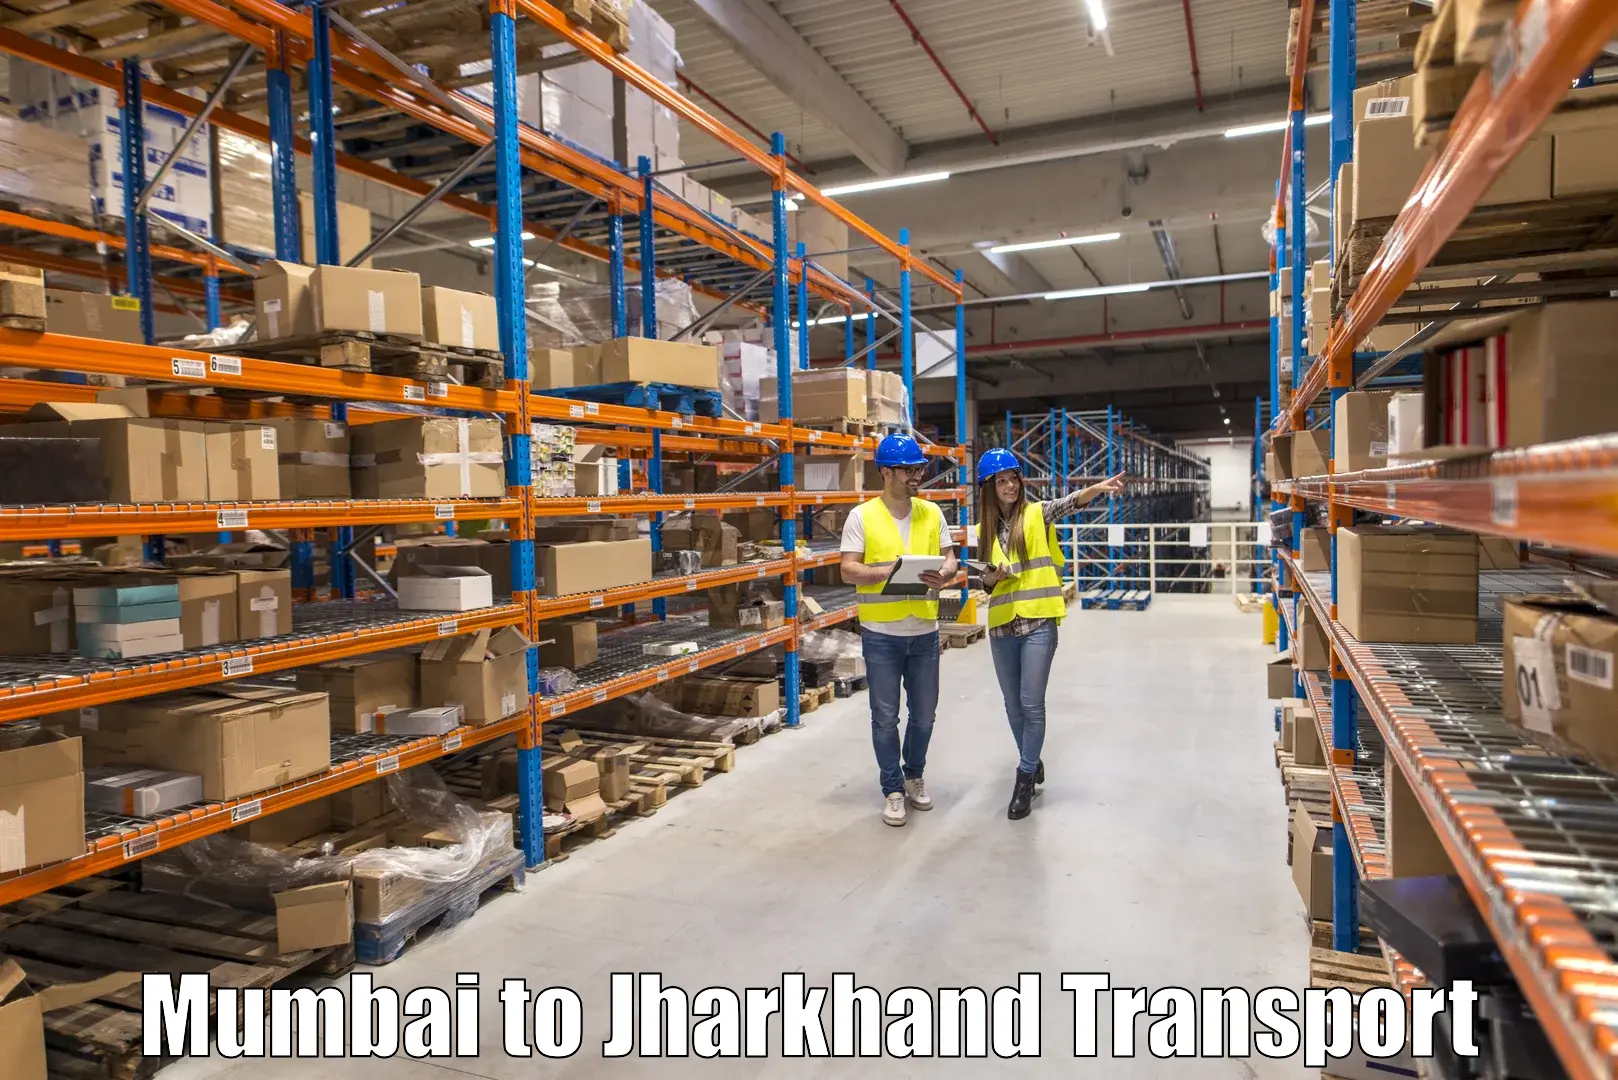 Cargo train transport services Mumbai to Chatra